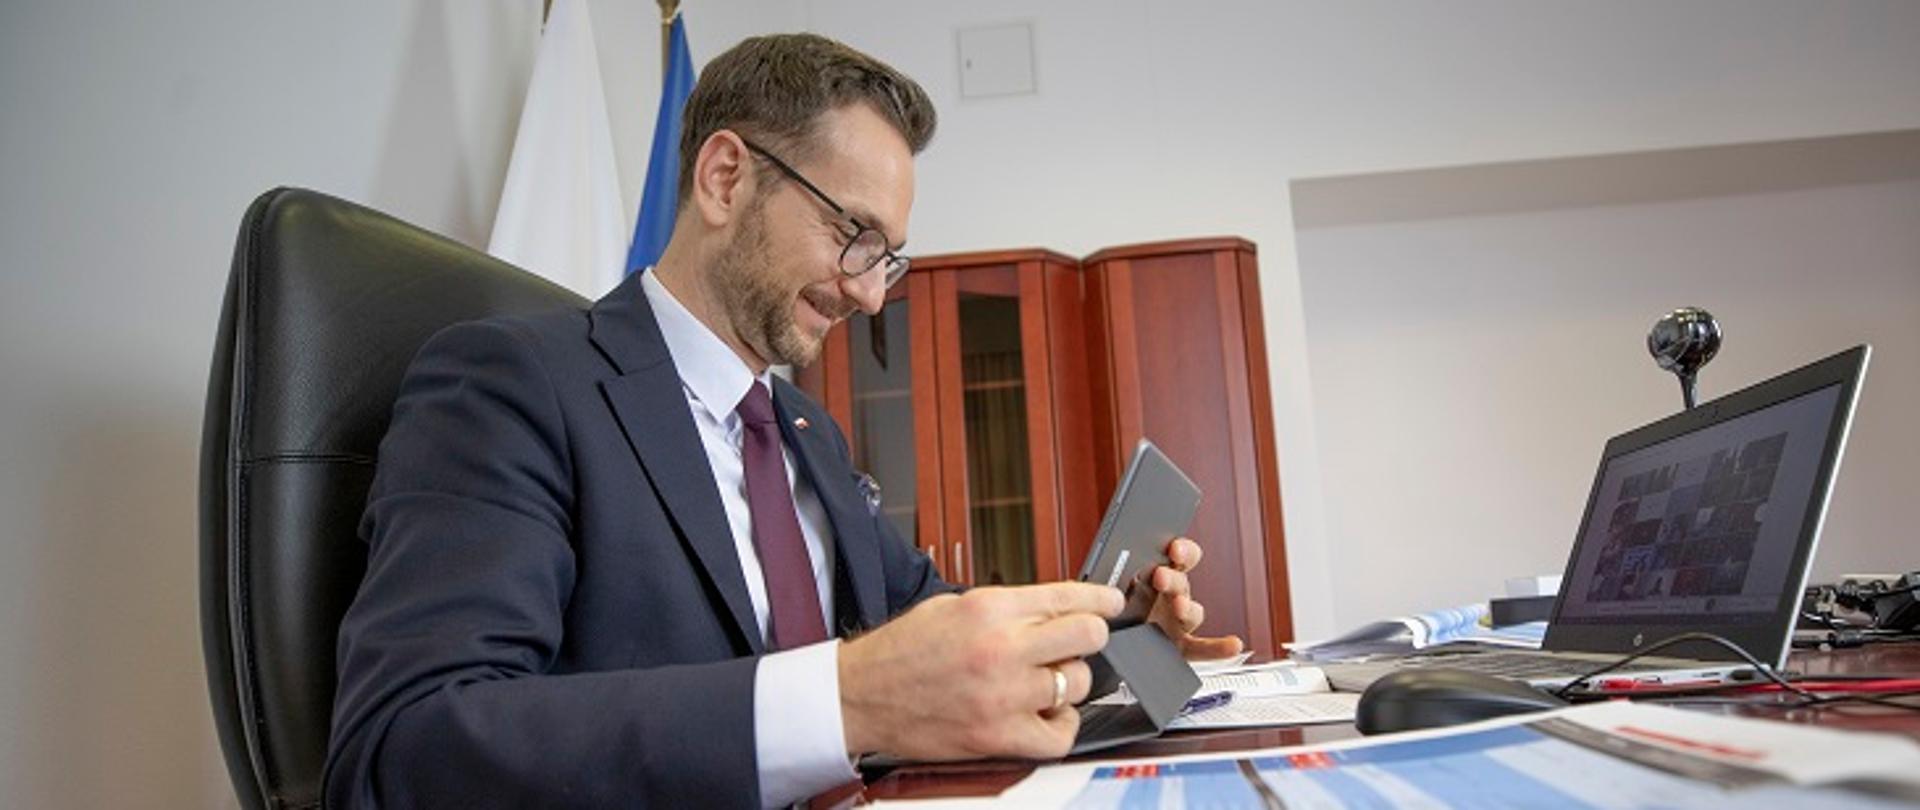 Wiceminister Waldemar Buda siedzi przy biurku, na którym stoi laptop i leżą dokumenty. Minister trzyma w dłoniach tablet.